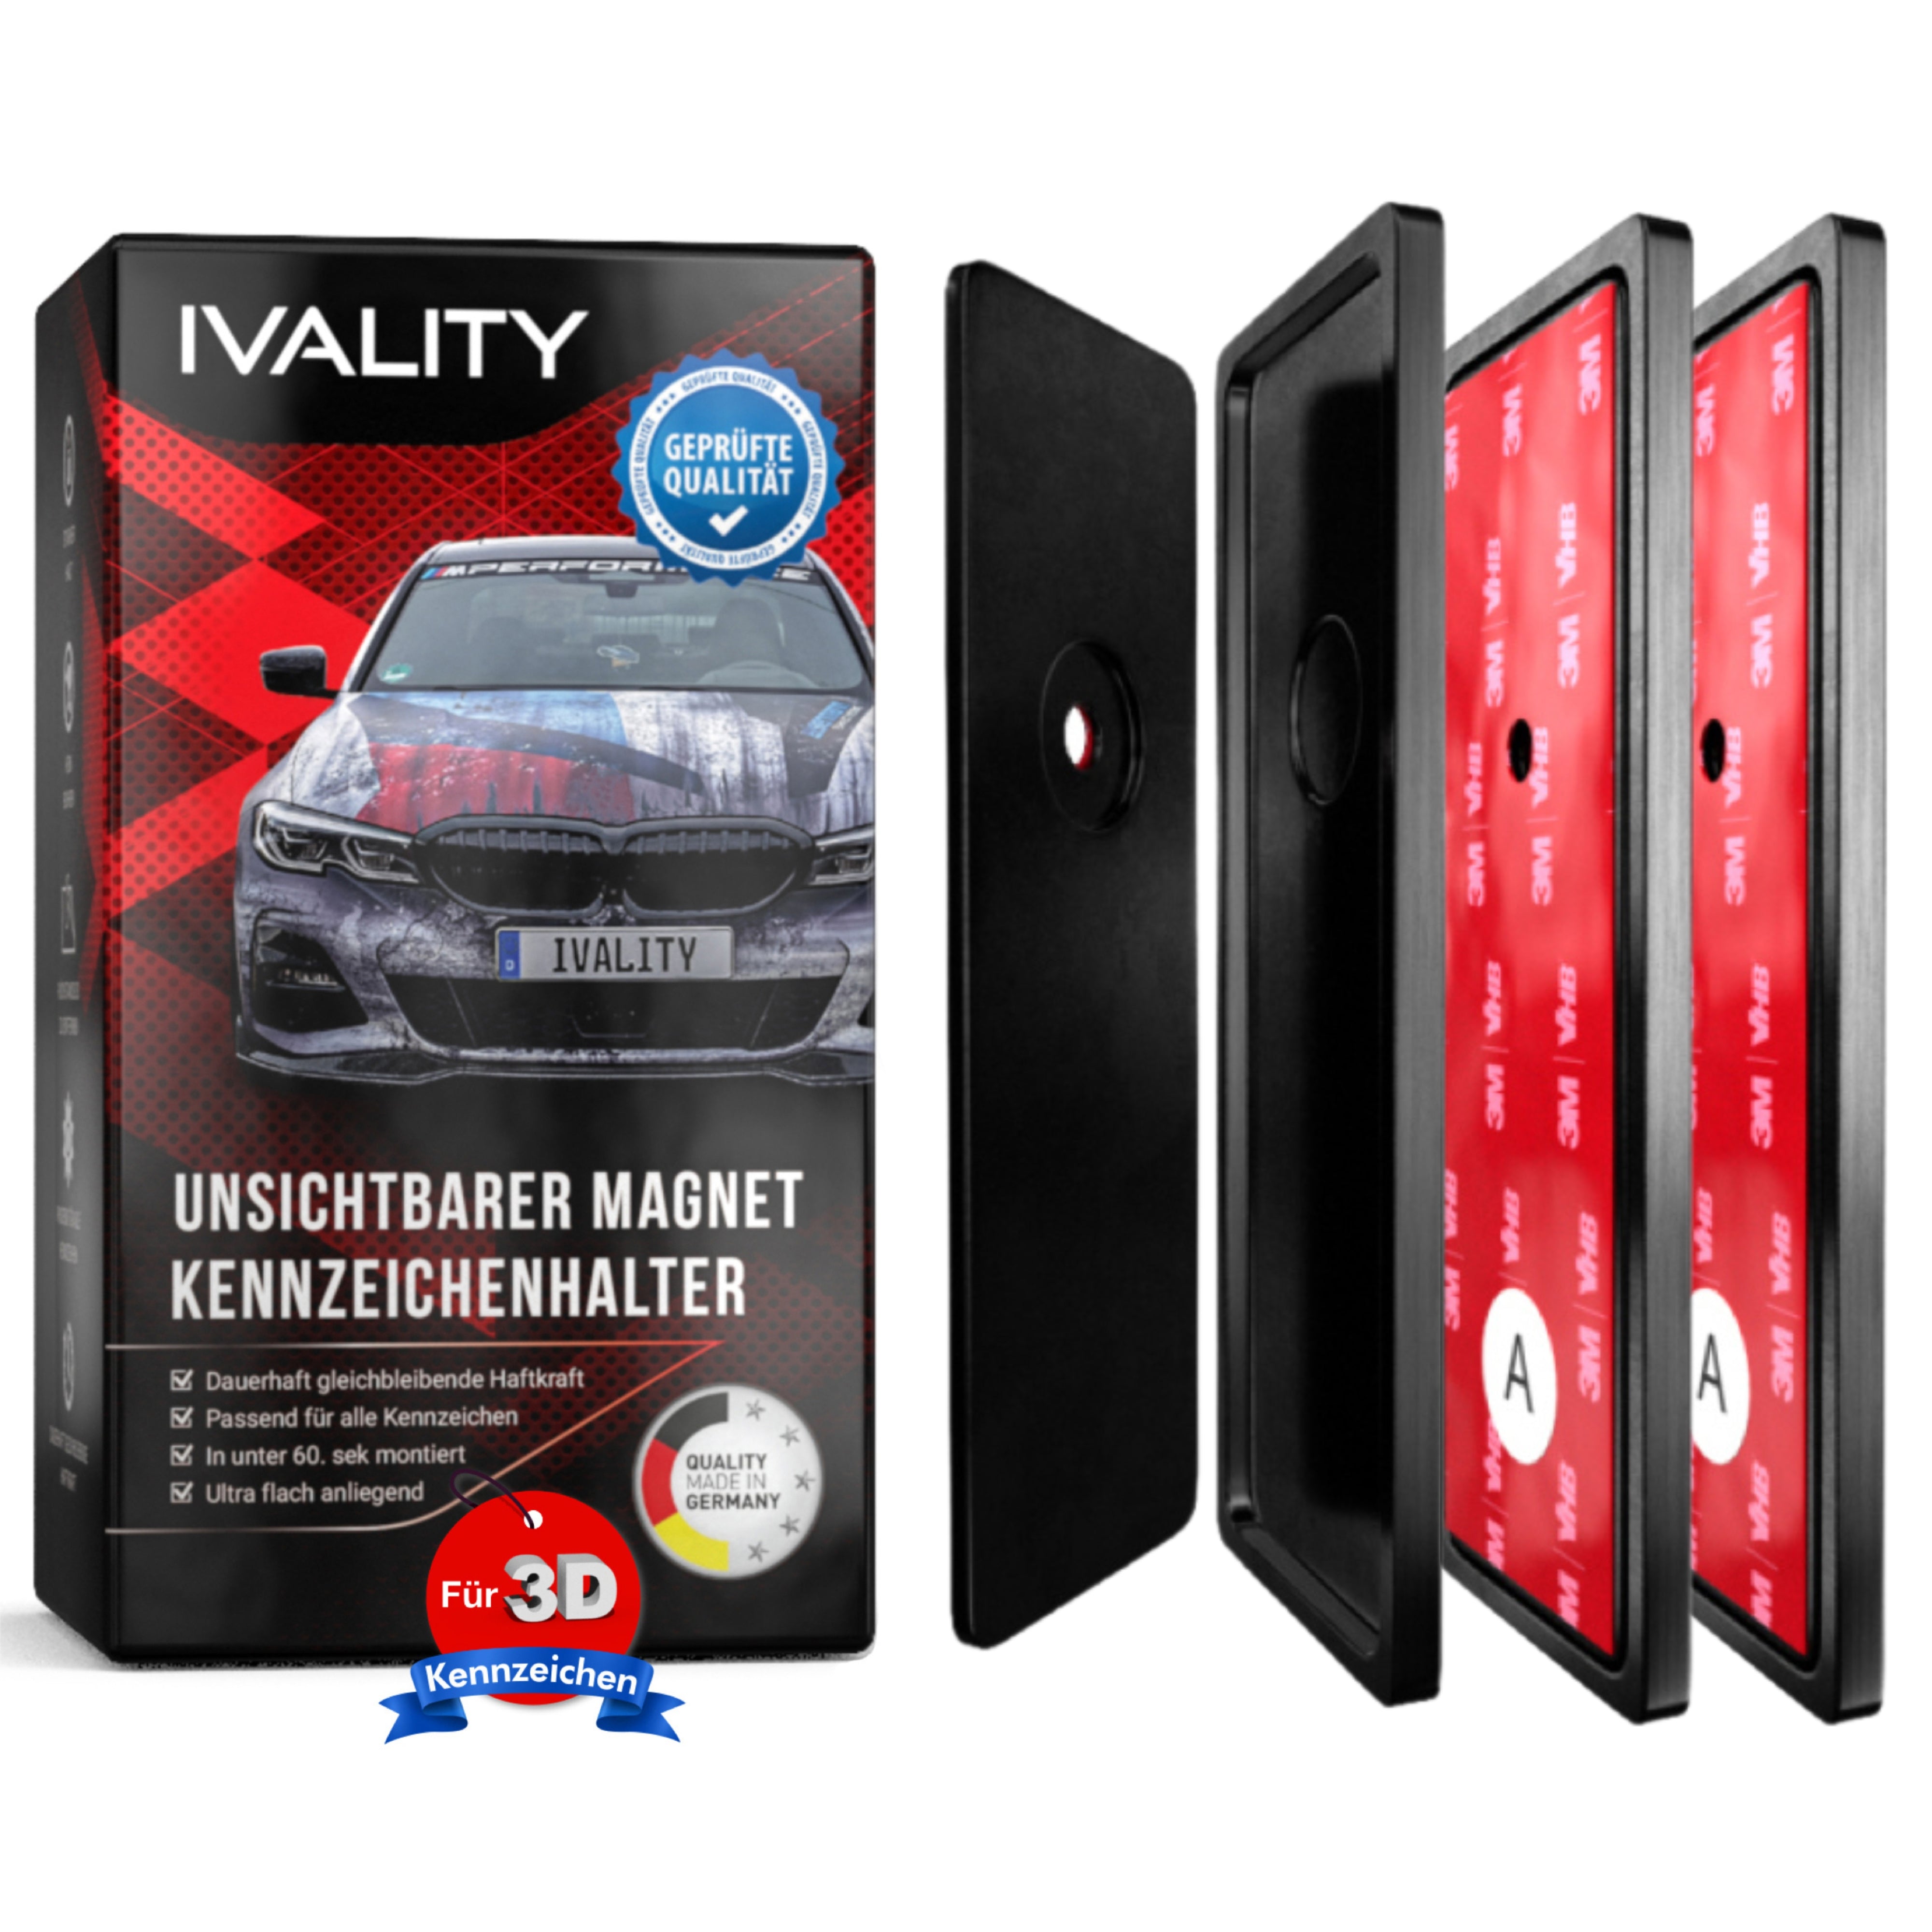 IVALITY - Magnet Kennzeichenhalter für 1x 3D Kennzeichen – Ivality